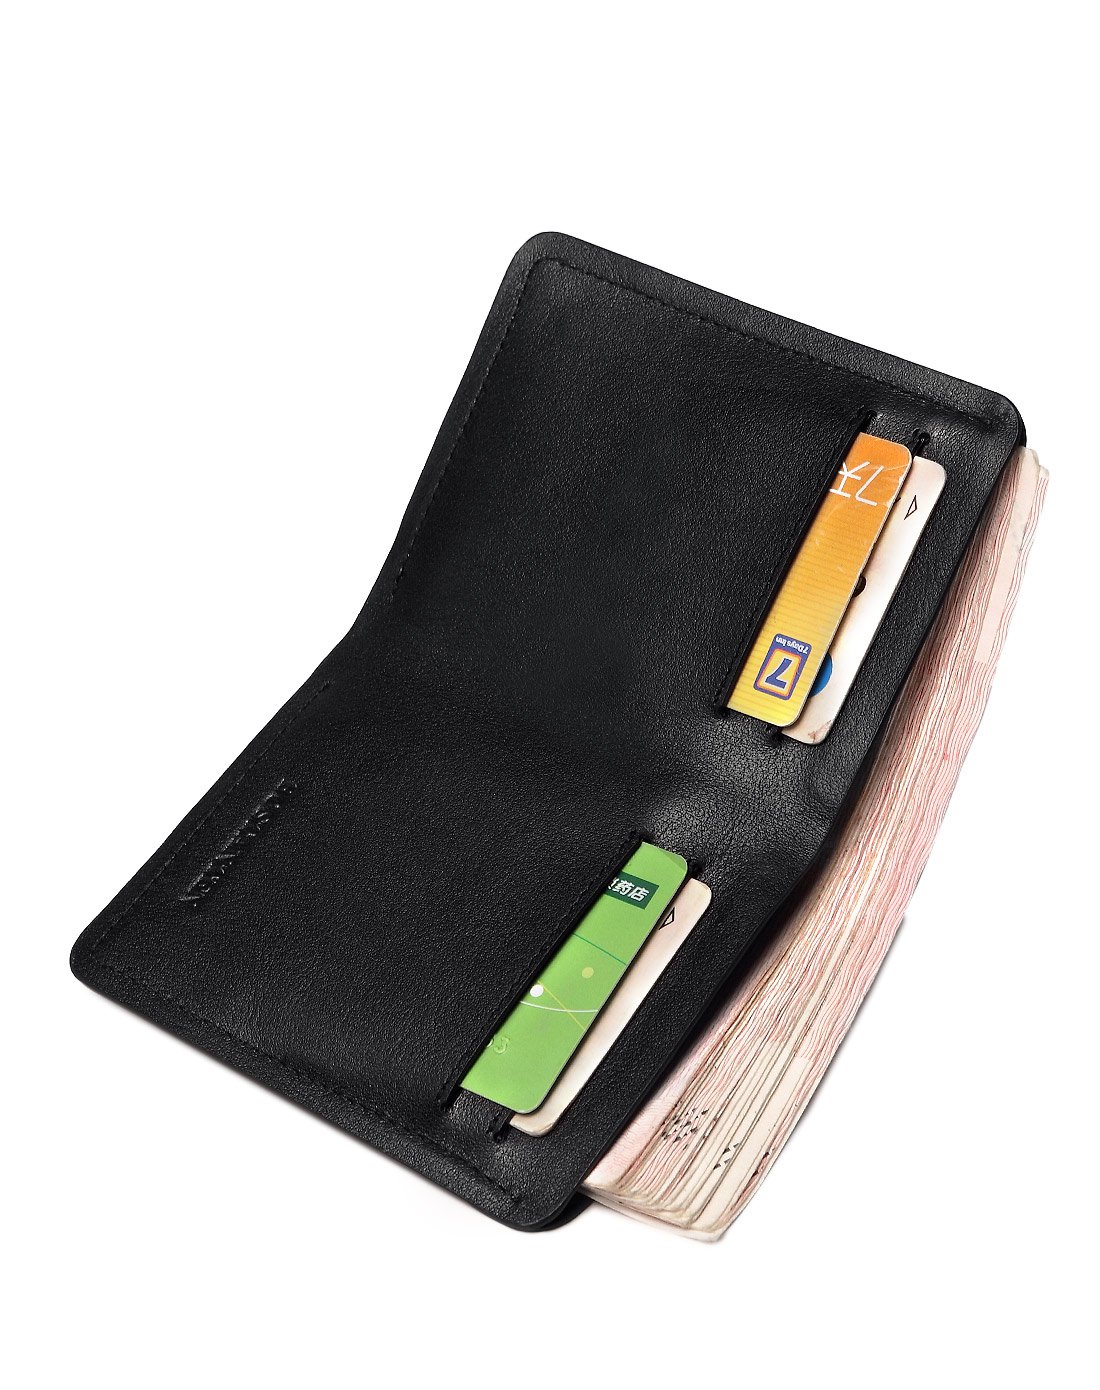 冷钱包热钱包区别知乎_冷钱包和热钱包是什么_tp钱包是冷钱包还是热钱包